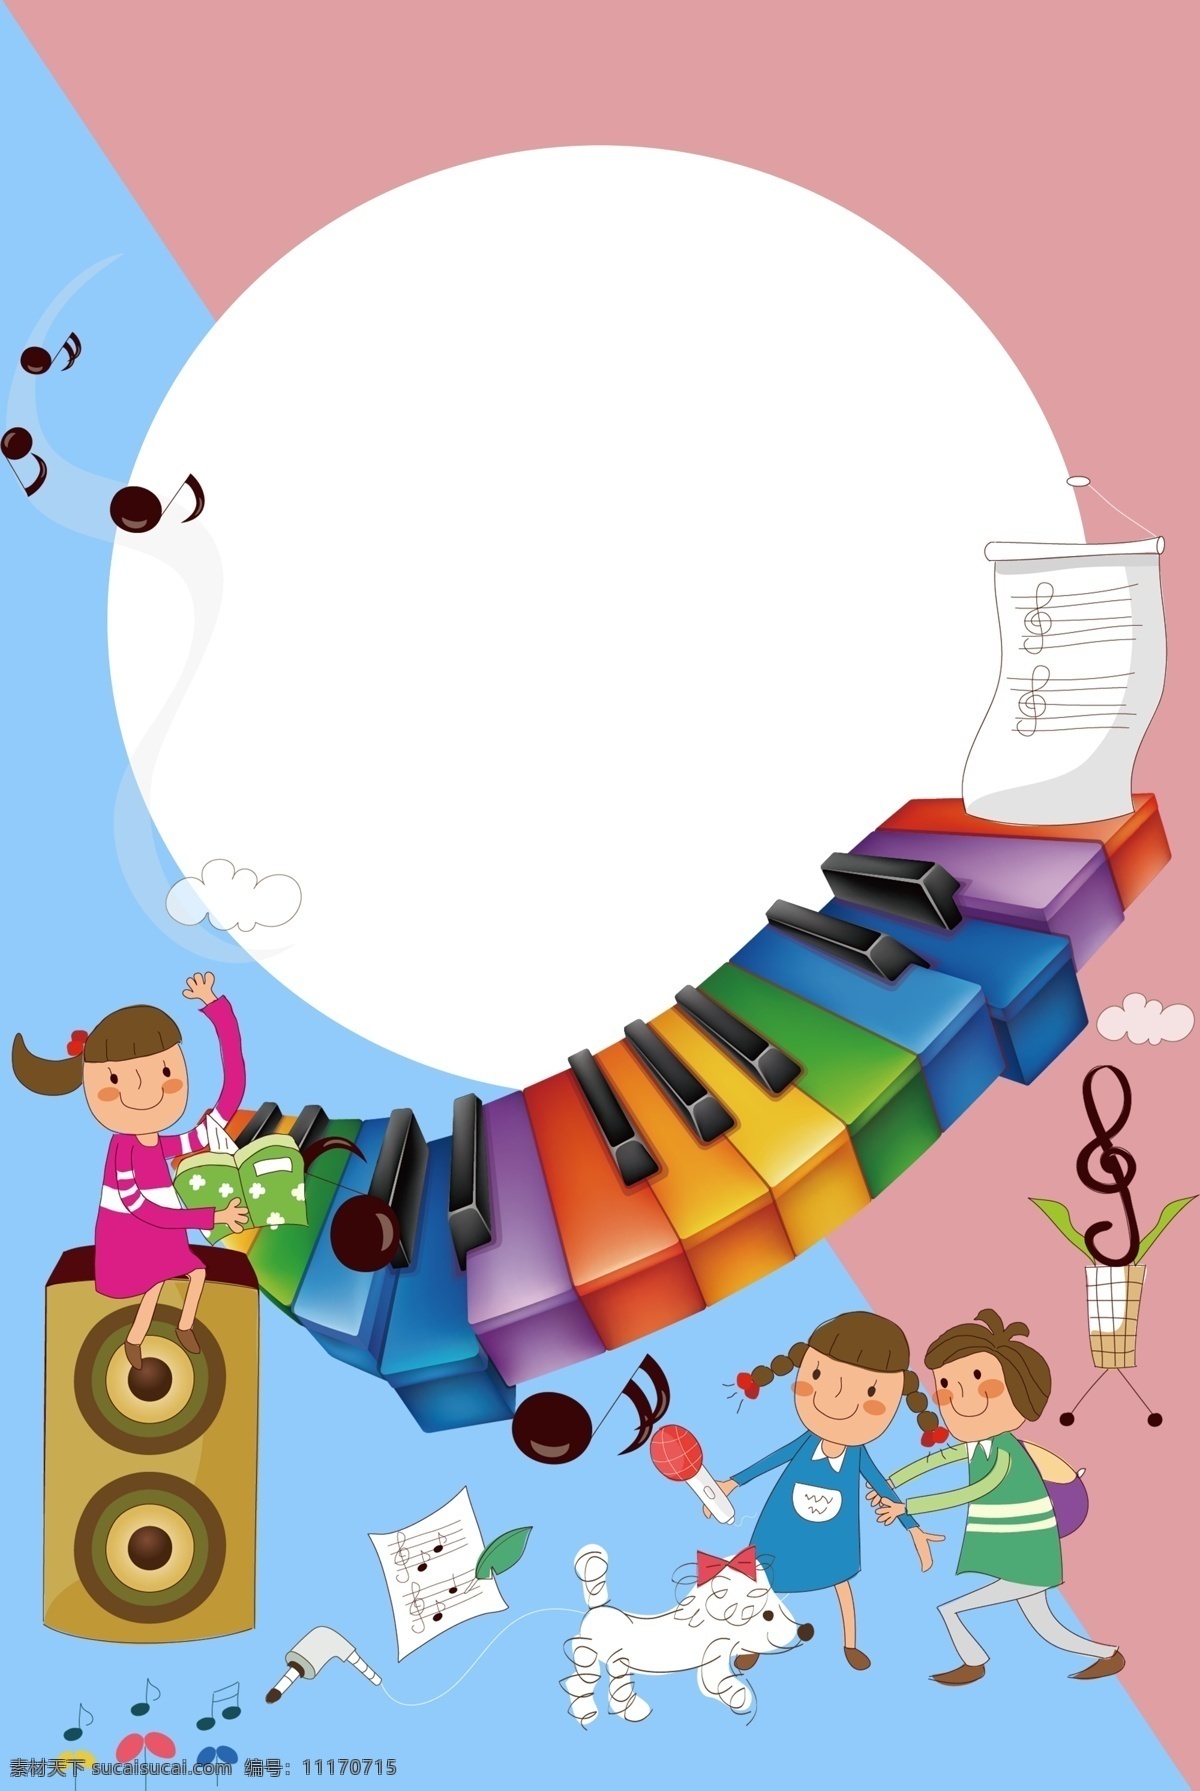 一群 小孩 琴键 上 跳舞 音乐 乐器 可爱 彩色 钢琴 唱歌 音符 童趣